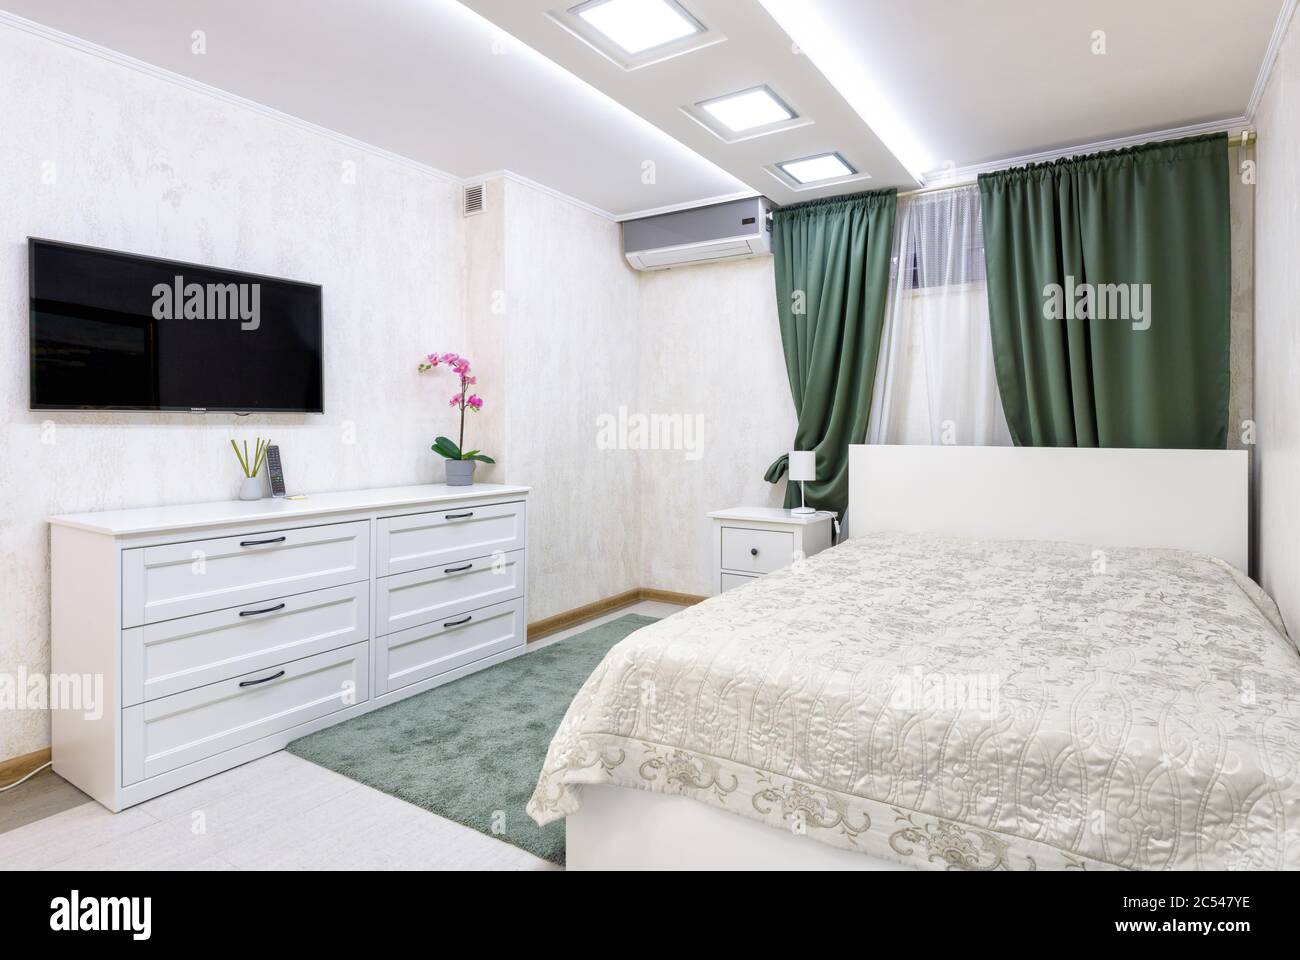 Moskau - Aug 24, 2019: Schlichtes gemütliches Schlafzimmer-Interieur mit weißem Design. Moderne Einrichtung des Hotels oder Hauses mit Bett und Kommode. Modernes sma Stockfoto